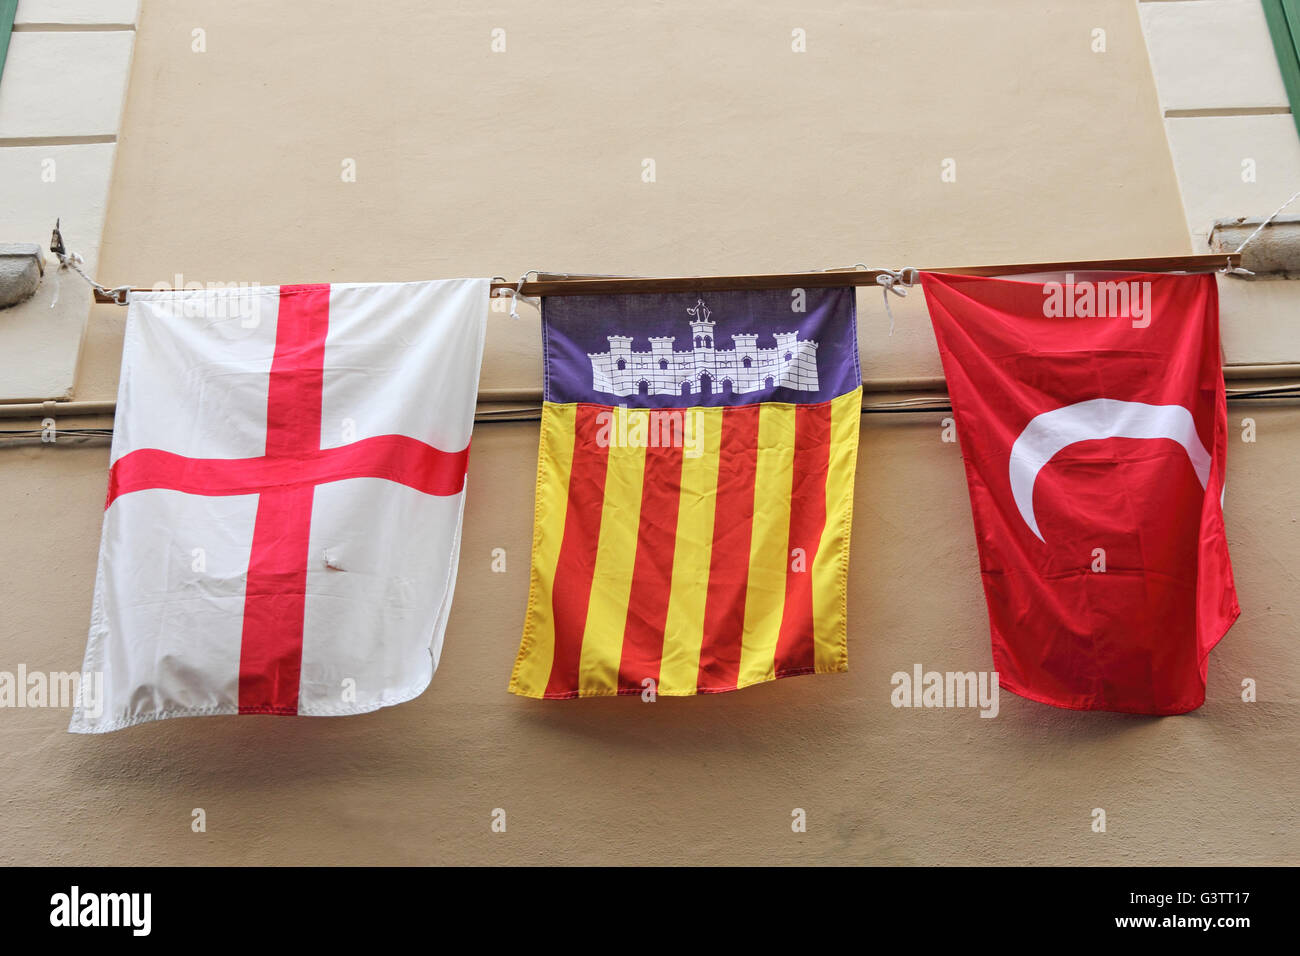 Weisse Halbmond Auf Rotem Grund Katalonien Und Rotes Kreuz Auf Weissem Hintergrund Fahnen Aufgehangt Fur Flagge Festival In Soller Mallorca Stockfotografie Alamy